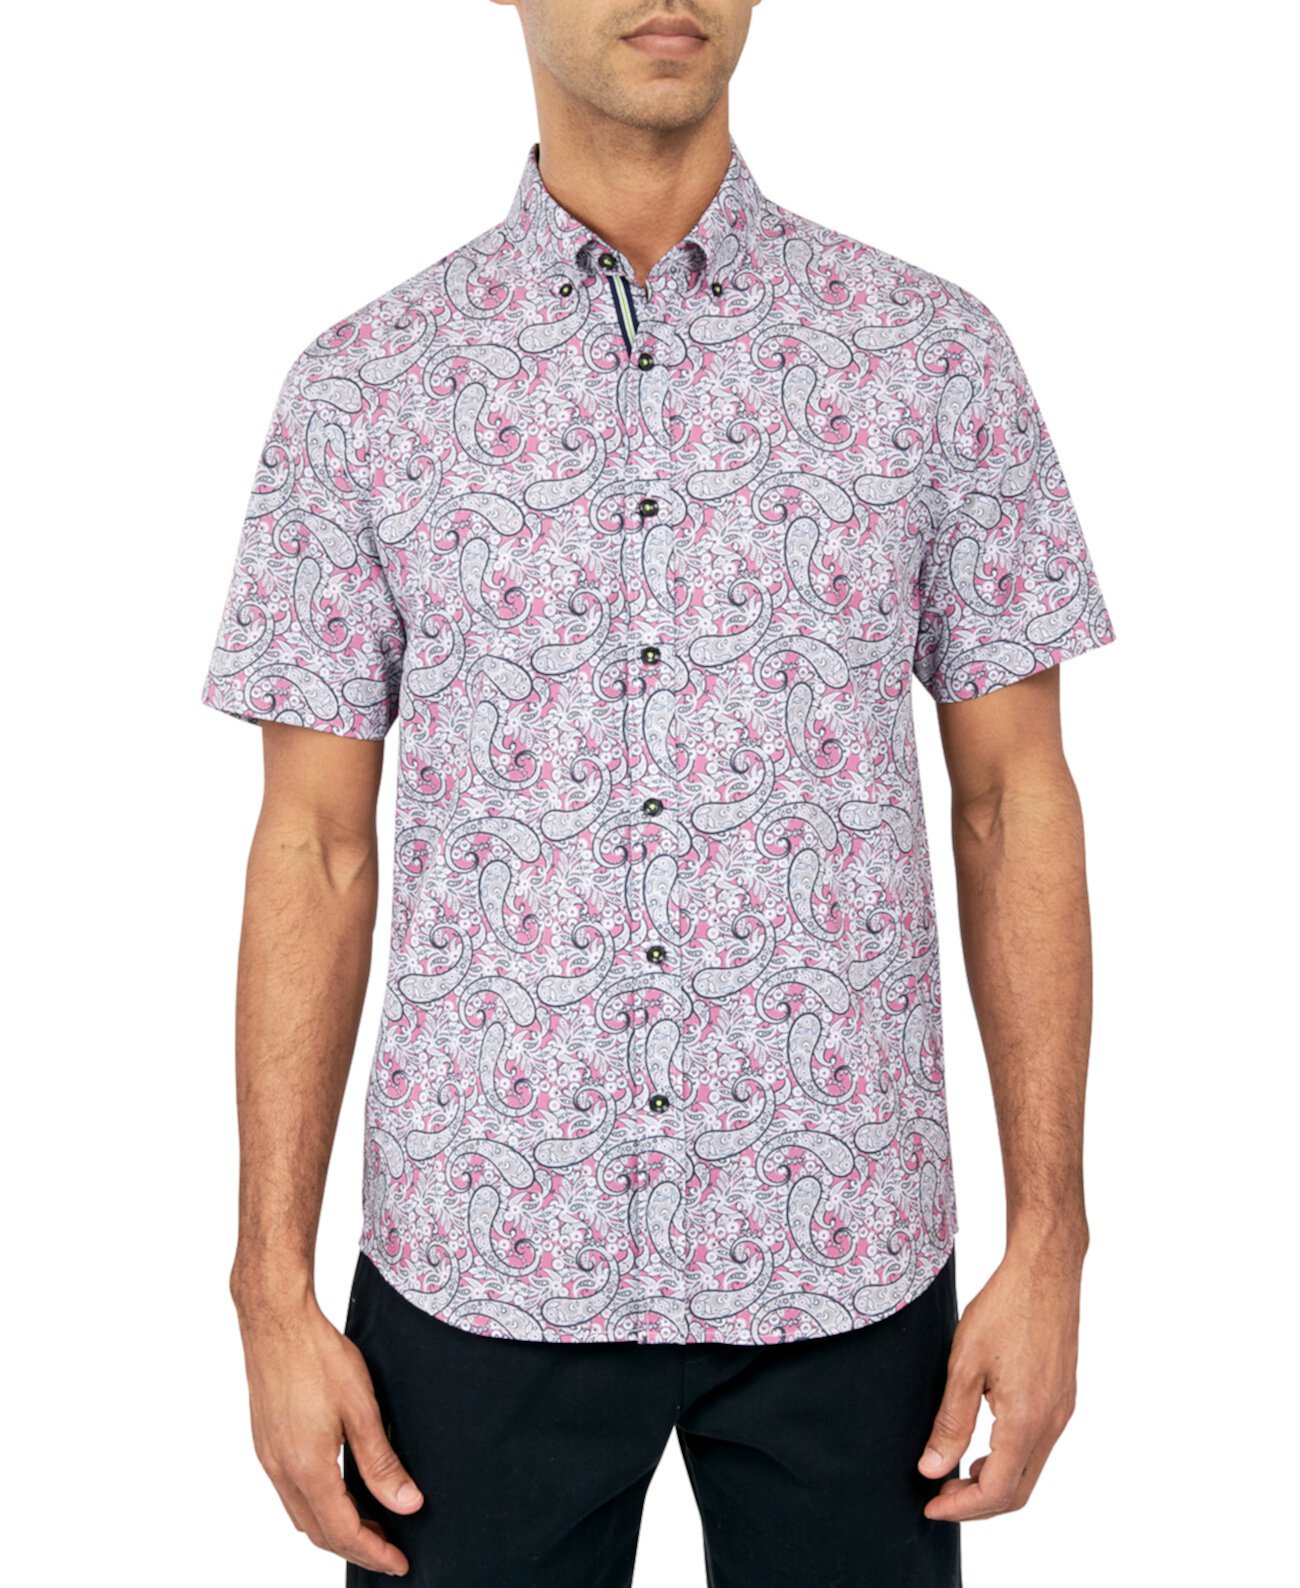 Мужская эластичная рубашка на пуговицах с принтом пейсли стандартного кроя без утюга Society of Threads